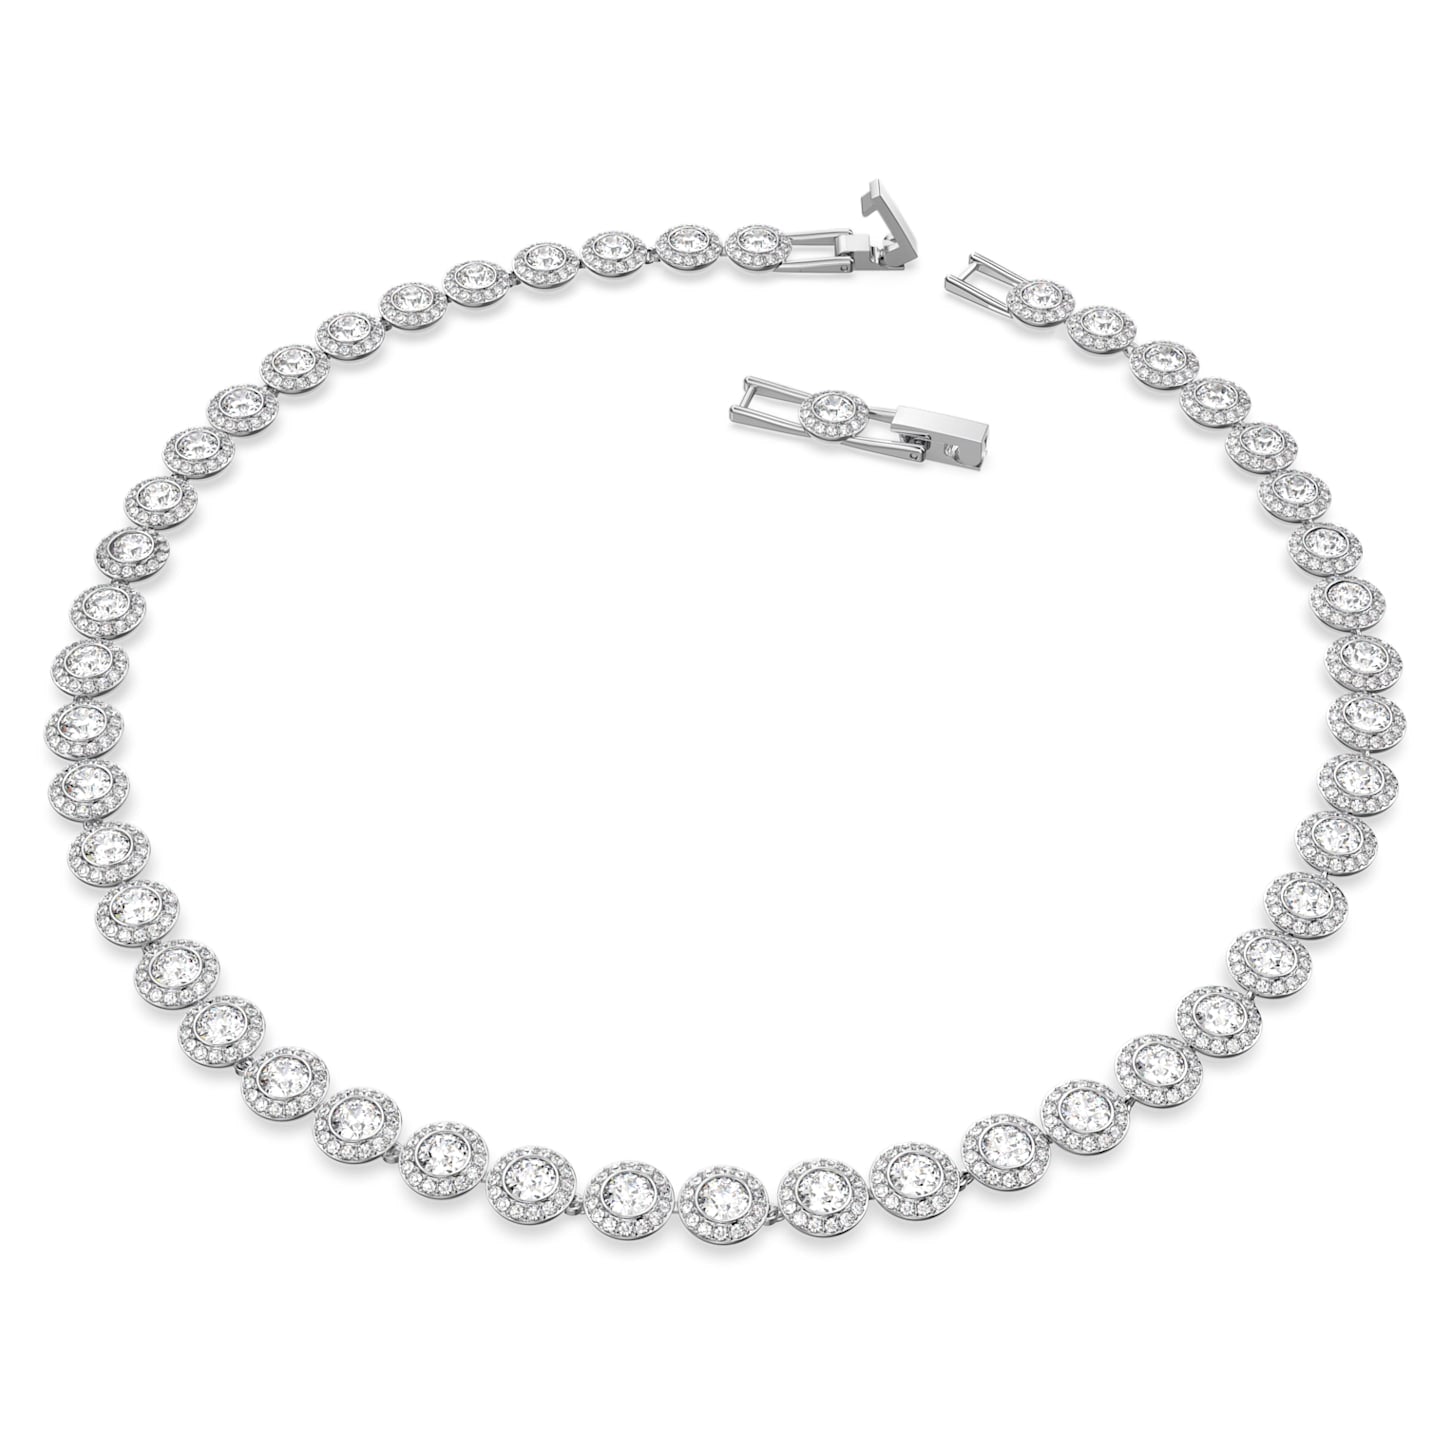 Angelic - Round - White Silver - Necklace - Swarovski